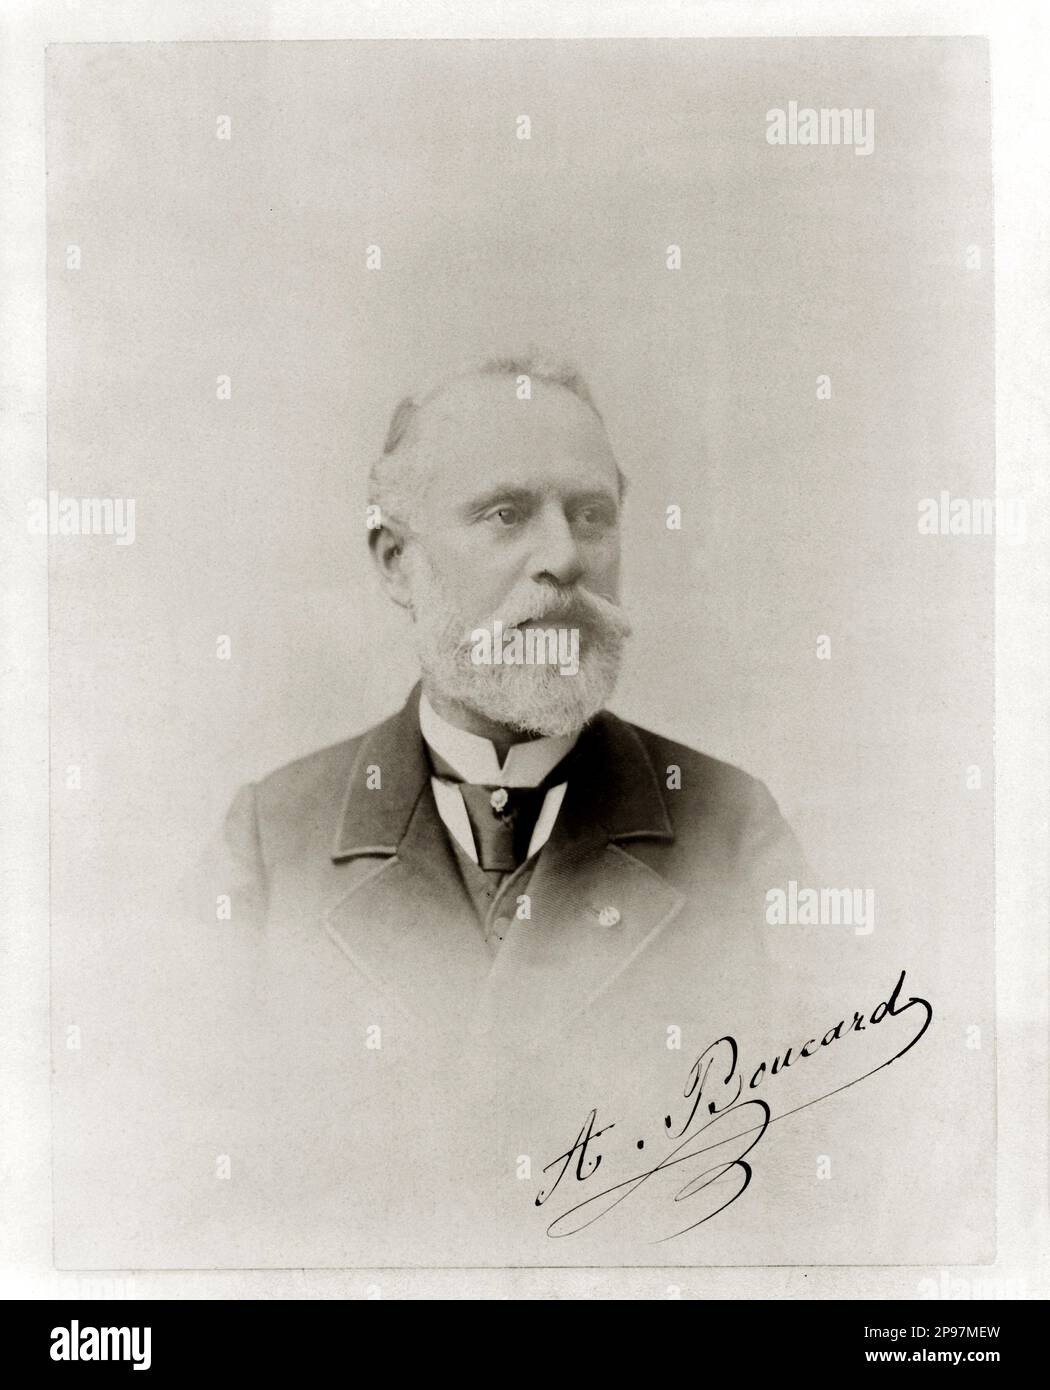 der französische Ornithologe ADOLPHE BOUCARD ( 1839 - 1905 ) - ORNITOLOGIA - ORNITOLOGO - ORNITHOLOGIE - Wissenschaftler - foto storiche - foto storica - scienziato - Wissenschaftler - Portrait - Rituto - FRANKREICH - FRANCIA - barba - Bart - BIOLOGE - SCIENZA - WISSENSCHAFT - BIOLOGE - BIOLOGO - BIOLOGIA - Krawatte - Cravatta - Halsband - colletto Uomo anziano vecchio - Signatur - Firma - Autografo - Autogramm - Archivio GBB Stockfoto